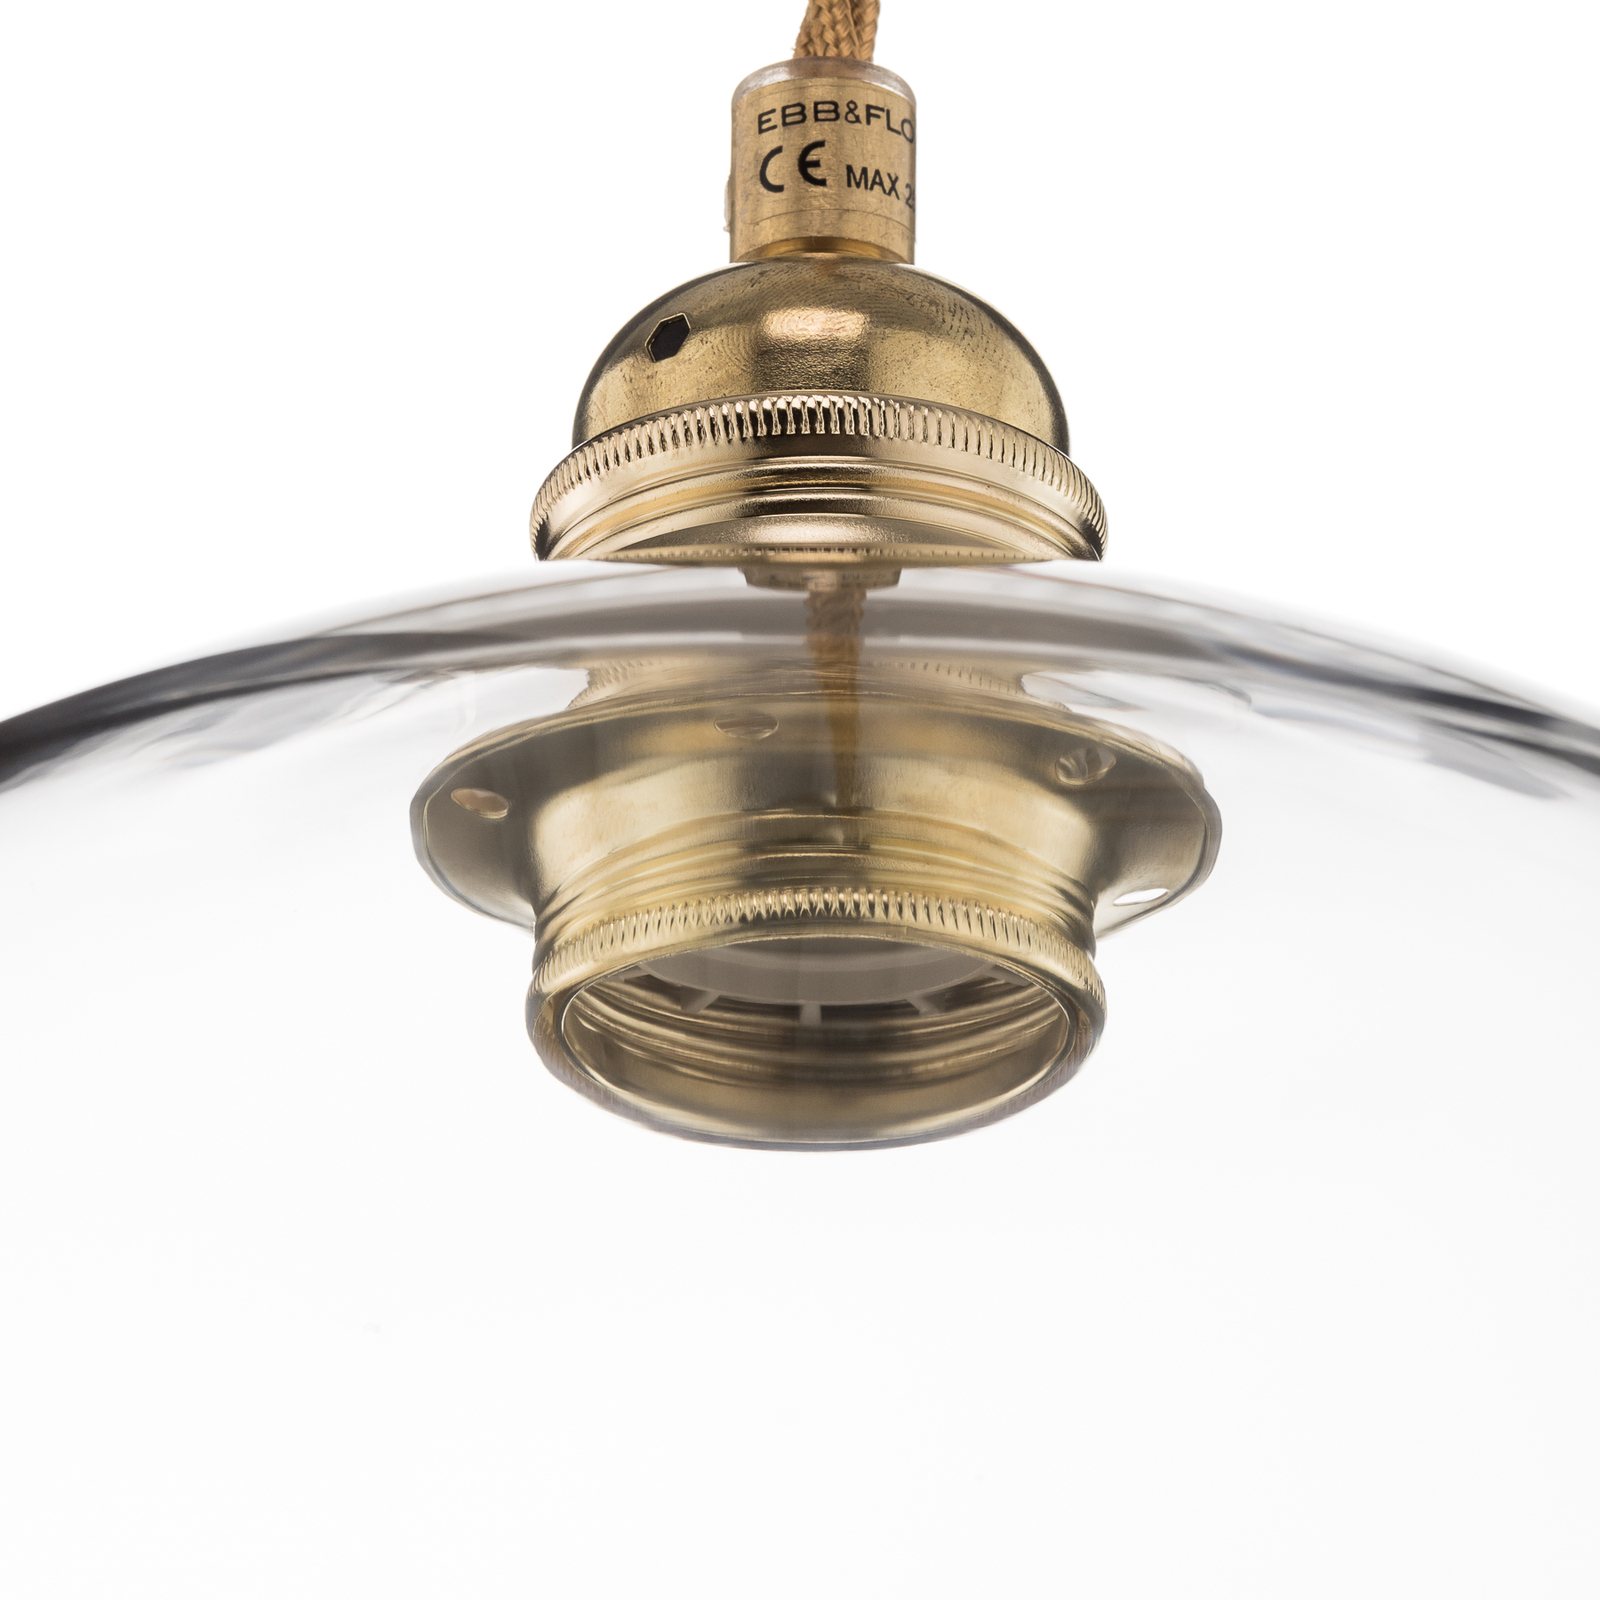 EBB & FLOW Rowan hanglamp helder glas, goud Ø 28cm